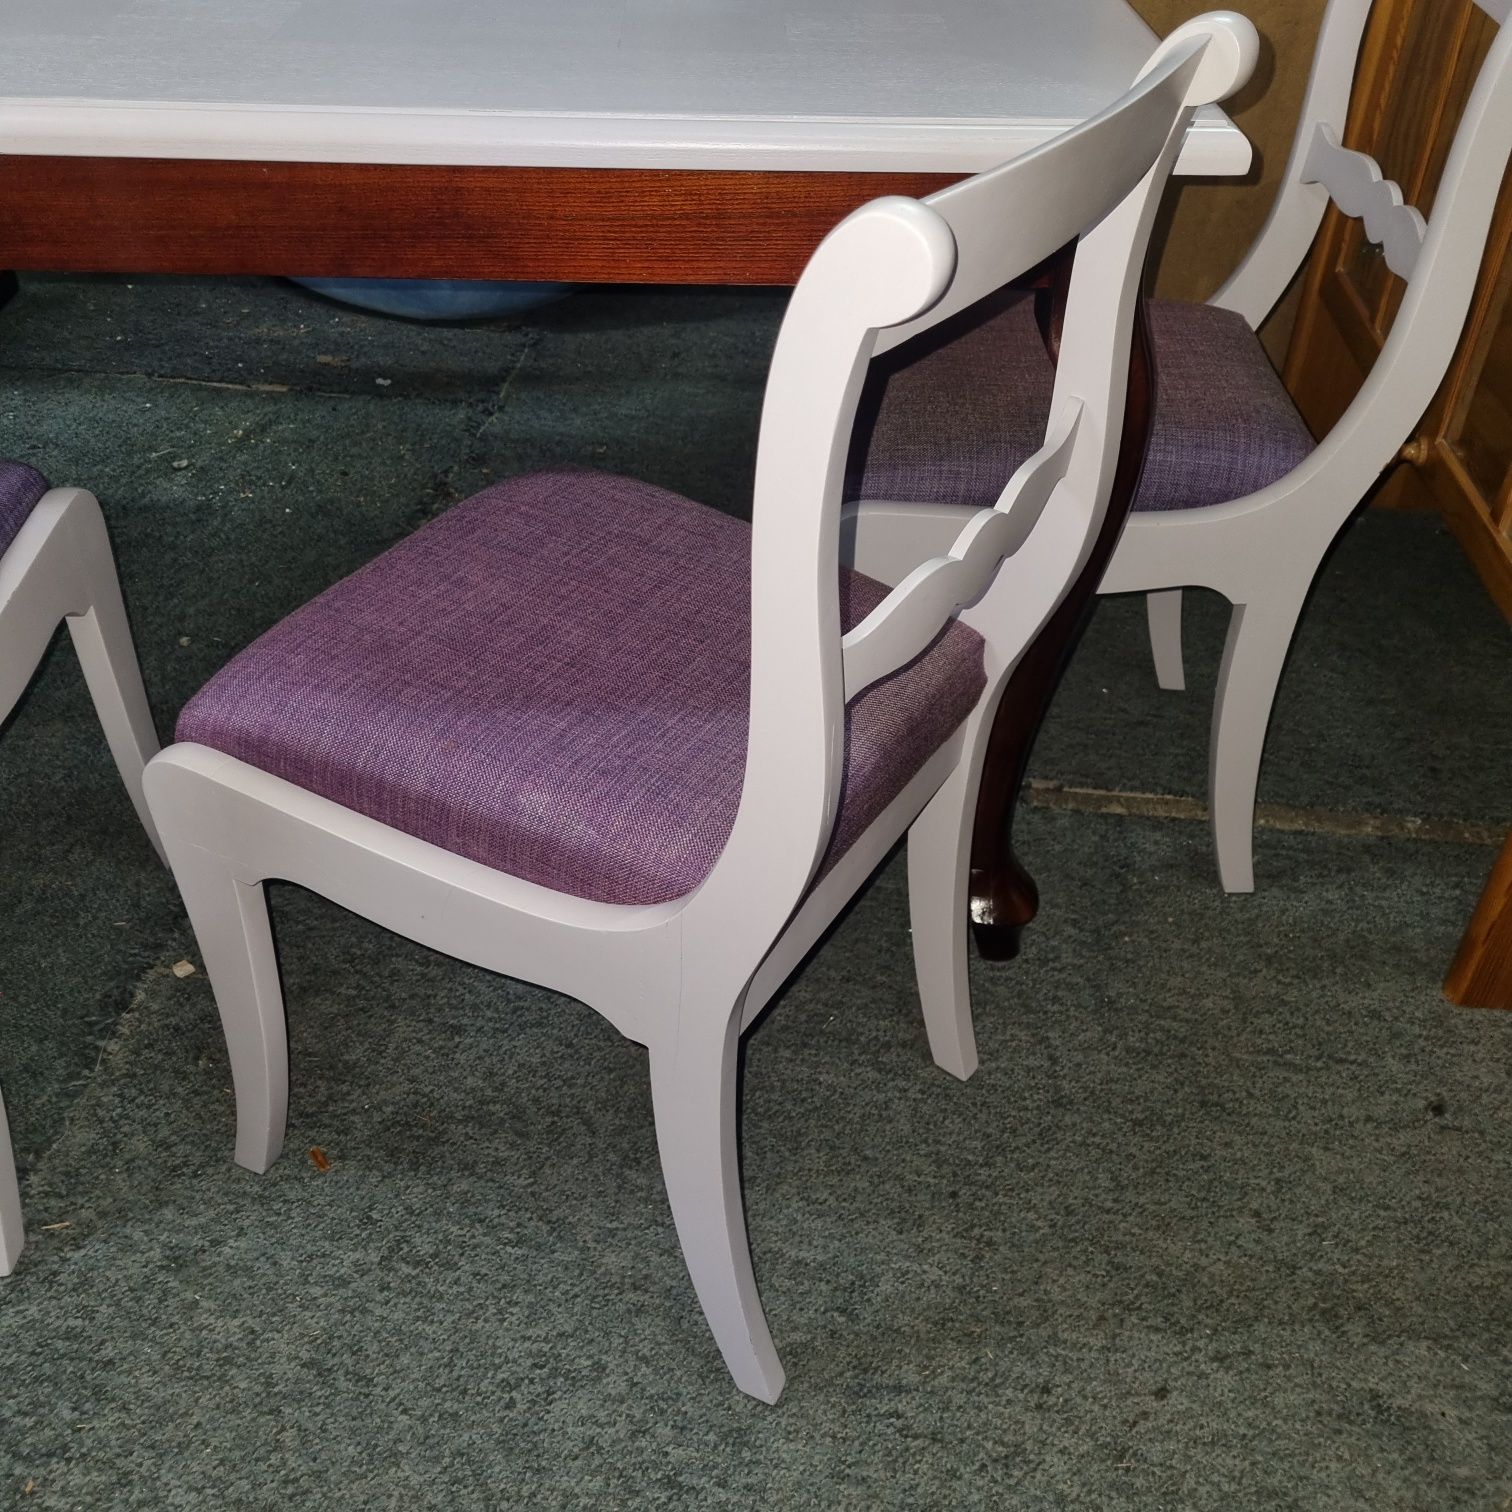 Meble Henryków stół i4 krzesła antyki po modernizacji